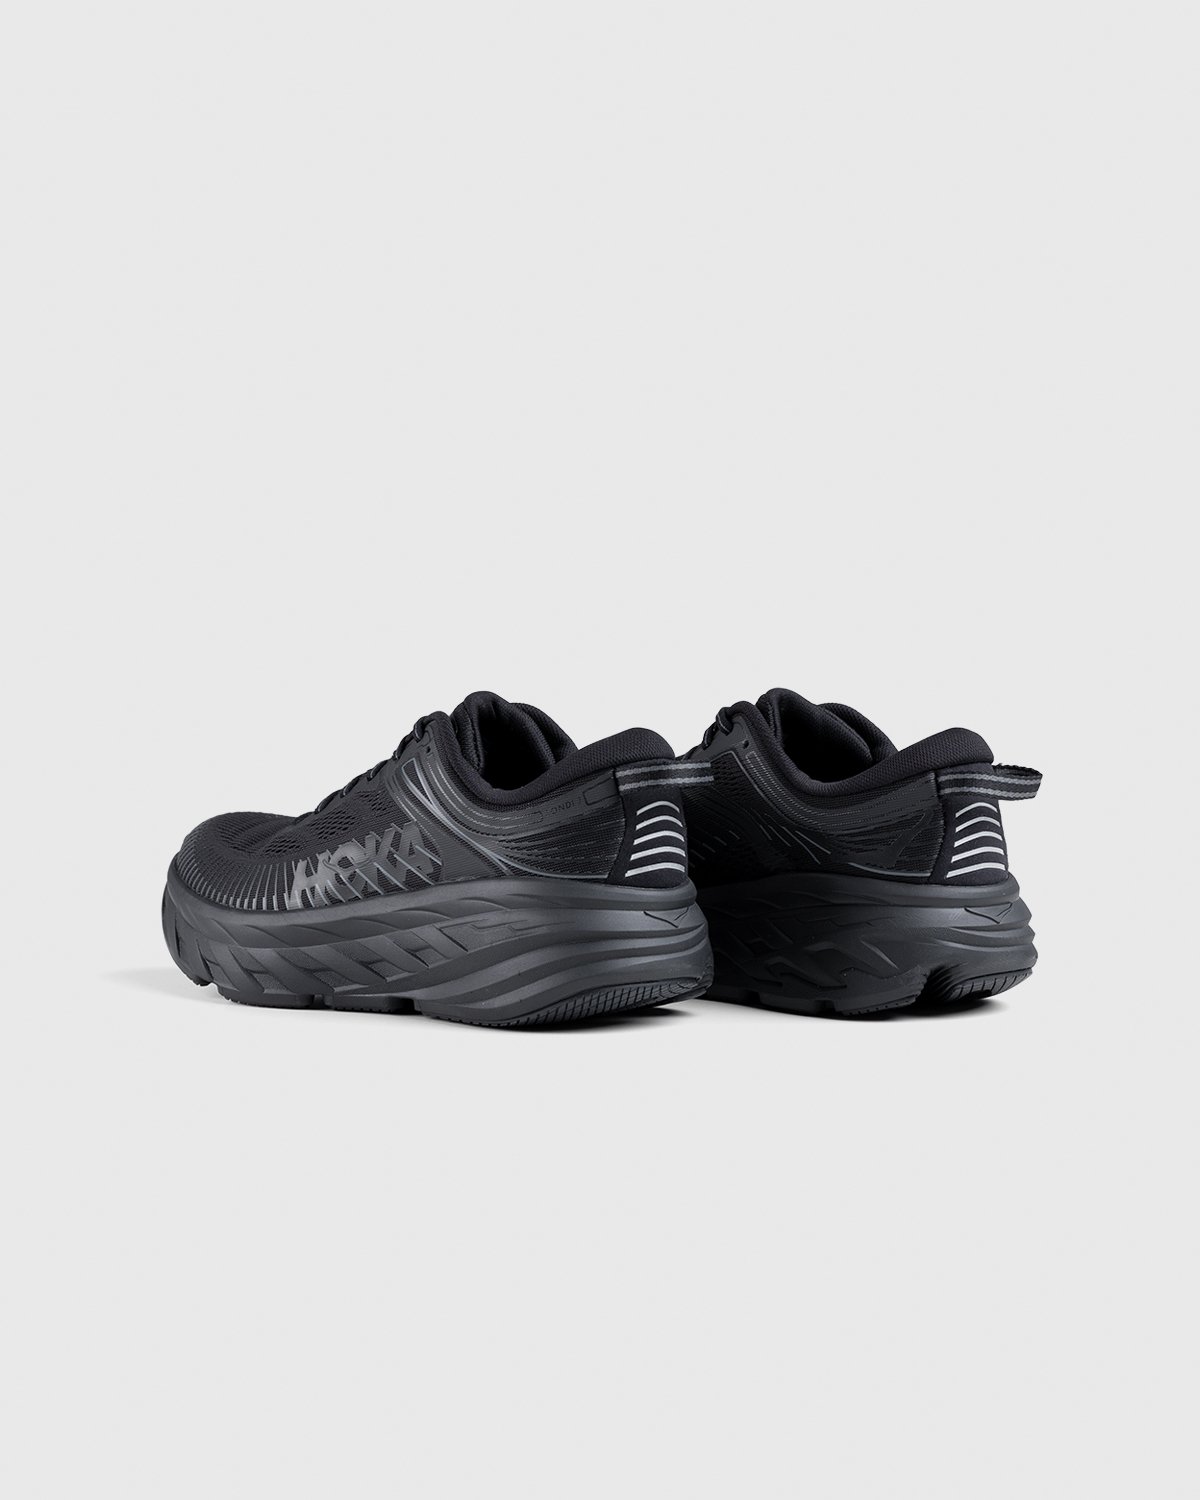 HOKA - M Bondi 7 Black - Footwear - Black - Image 4